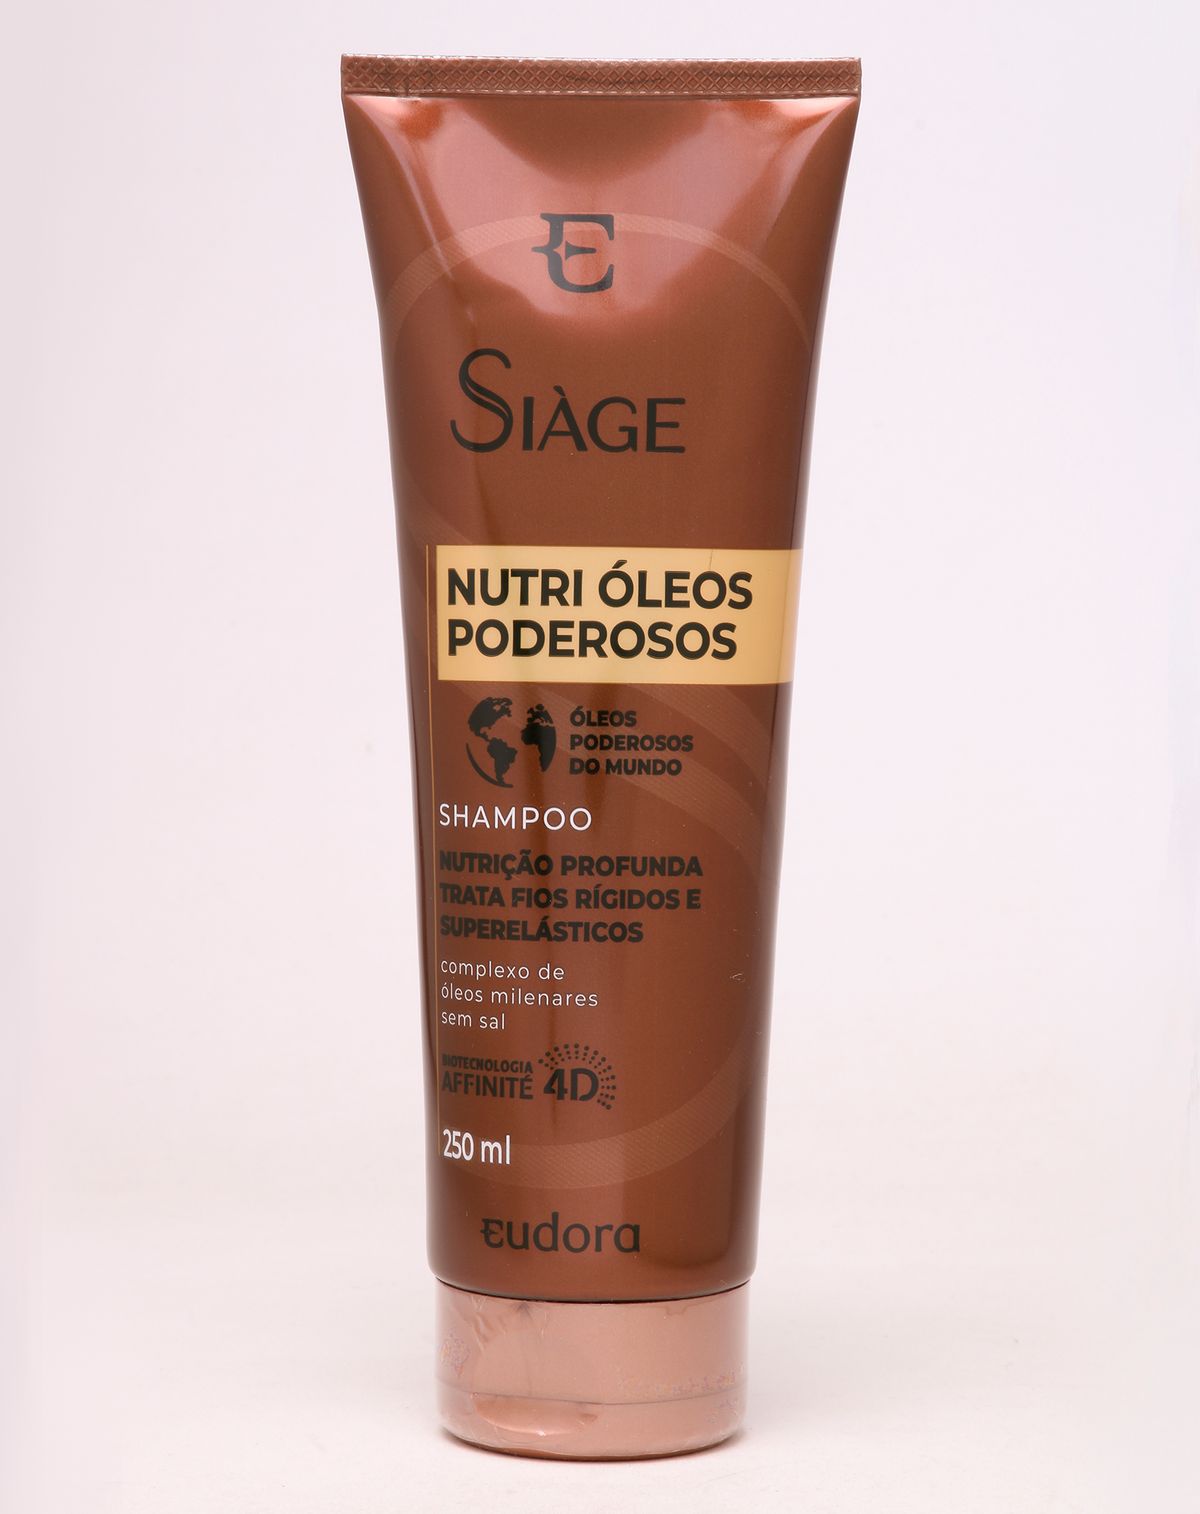 625718001-shampoo-siage-nutri-oleos-poderosos-eudora-200ml-unica-u-8e3